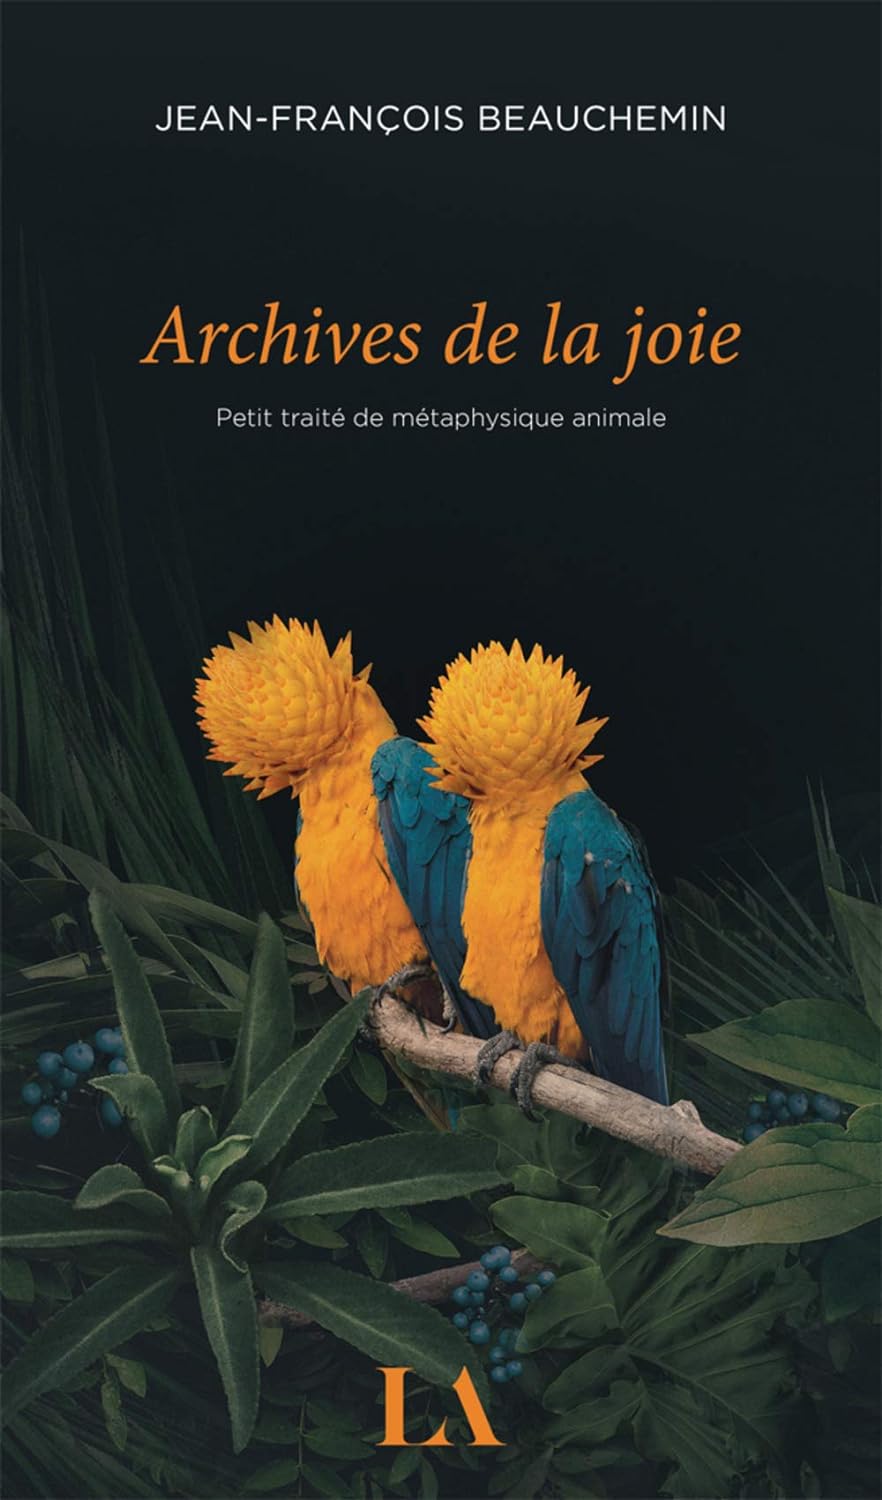 Livre ISBN 2764435045 Archives de la joie : Petit traité de métaphysique animale (Jean-François Beauchemin)